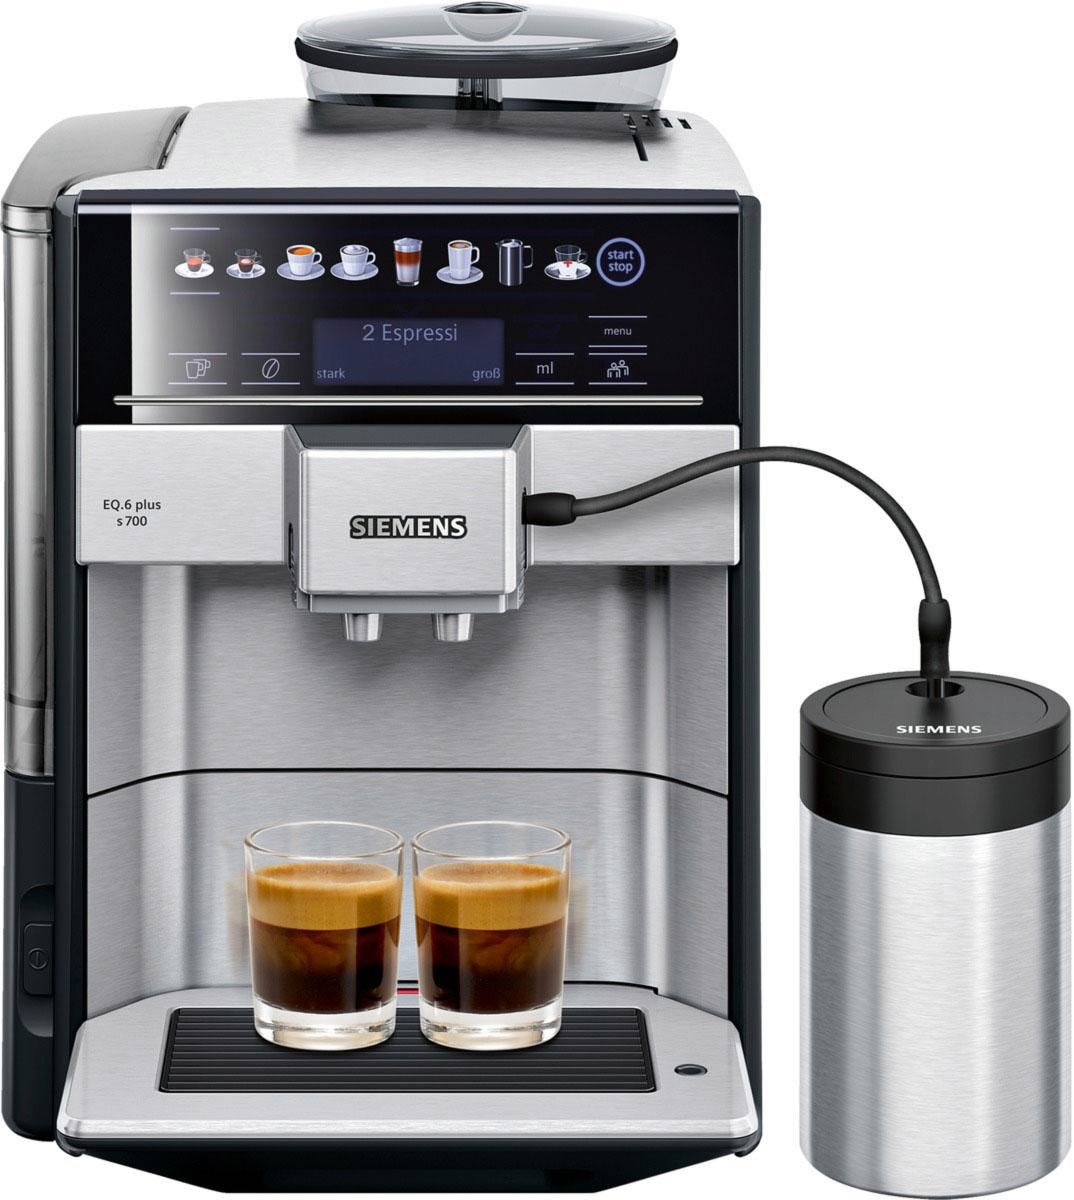 SIEMENS Kaffeevollautomat EQ.6 auf Tank, kaufen 1,7l plus Scheibenmahlwerk TE657503DE, s700 Rechnung